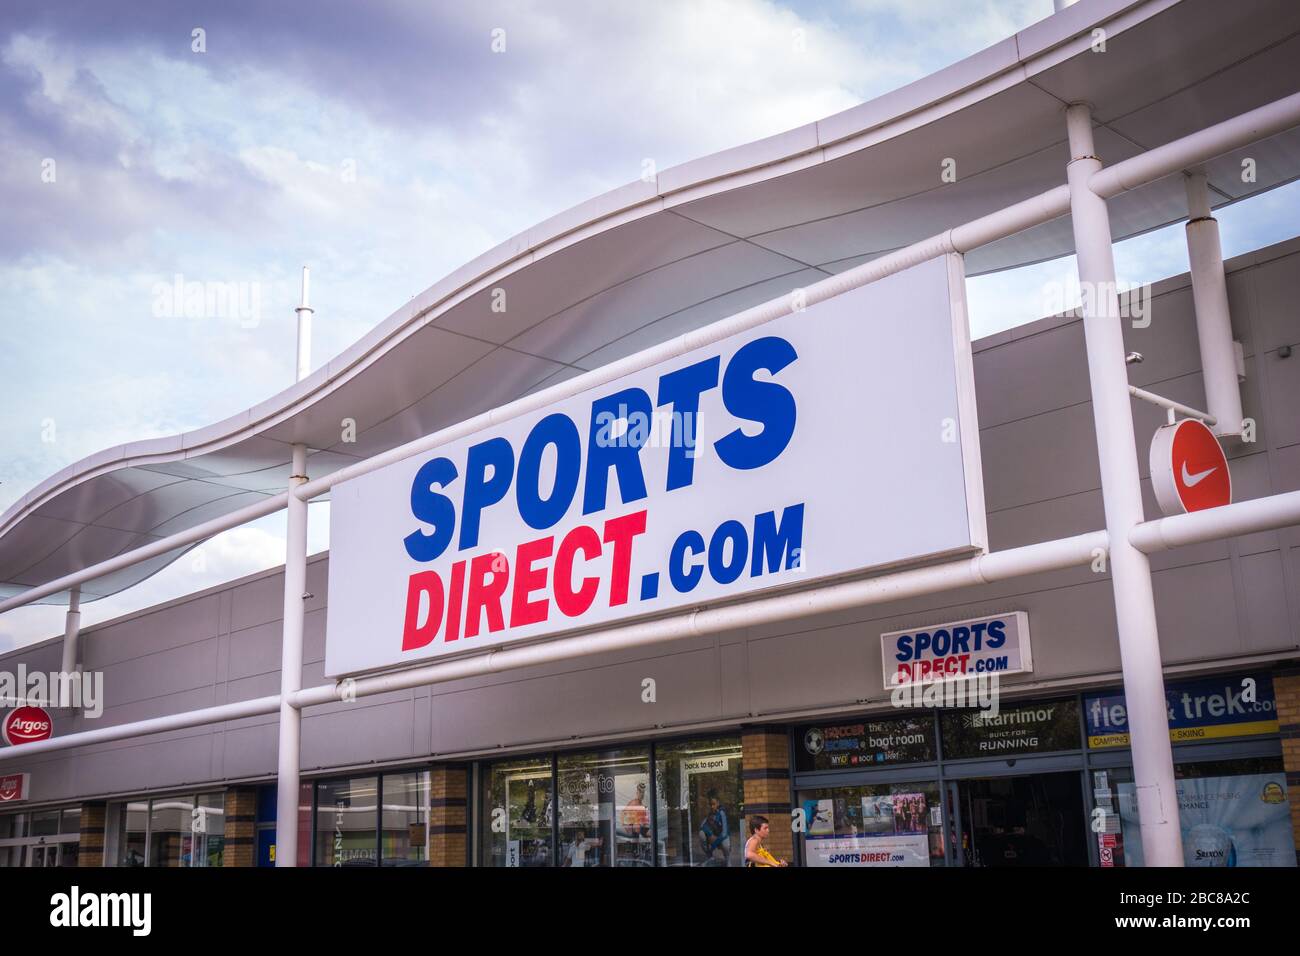 Sports Direct, minorista británico de productos deportivos de alta calle - logotipo exterior / señalización - Londres Foto de stock